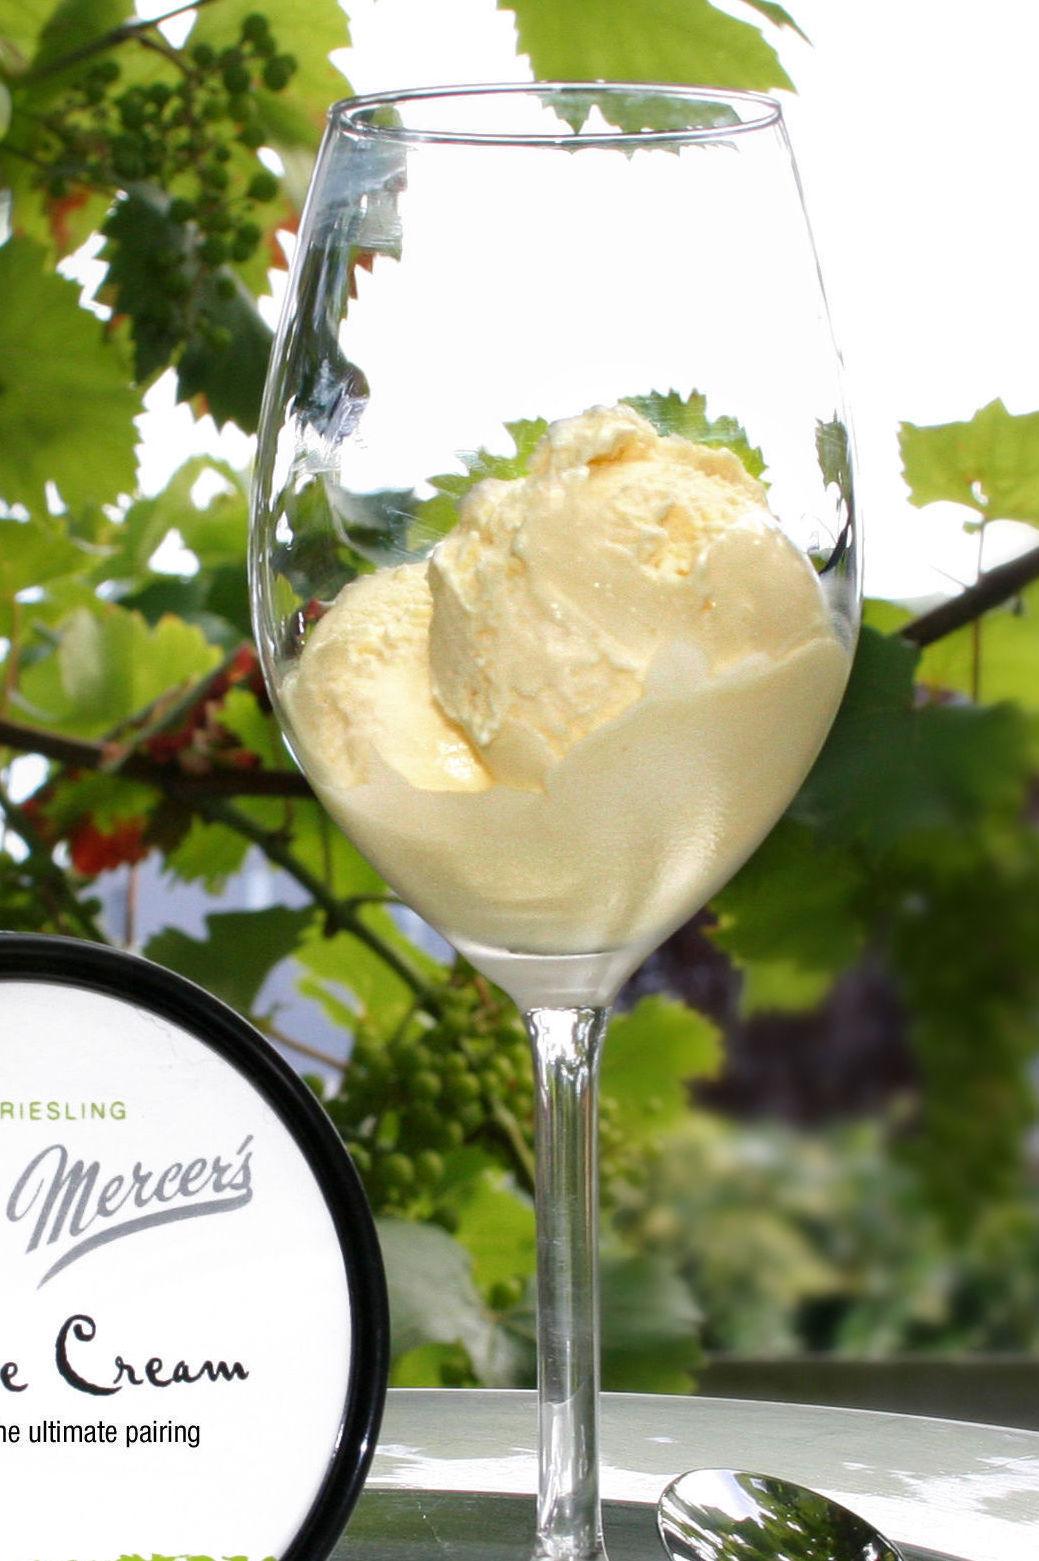 SKINNET BEDRAR: Dette ser kanskje ut som helt vanlig vaniljeis, men nei: Glasset er fylt med Riesling-iskrem. Foto: Mercer's Dairy